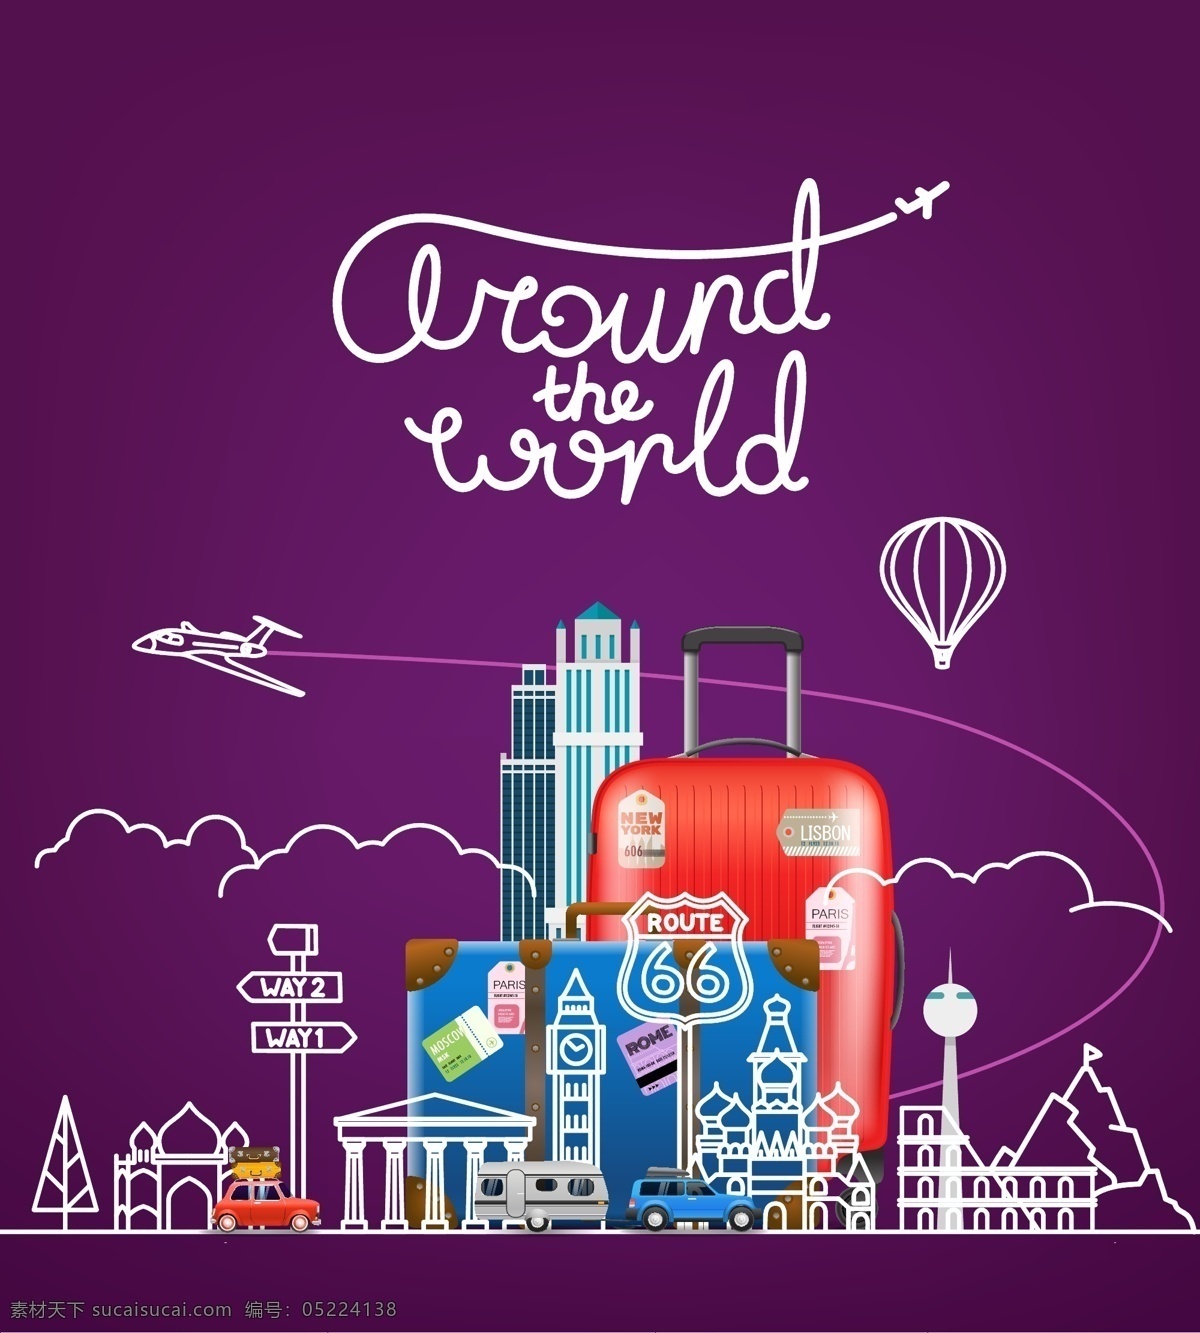 飞机 护照 元素 旅行 主题 飞机与护照 旅行旅游 行李箱 热气球 简笔 生活用品 生活百科 休闲娱乐